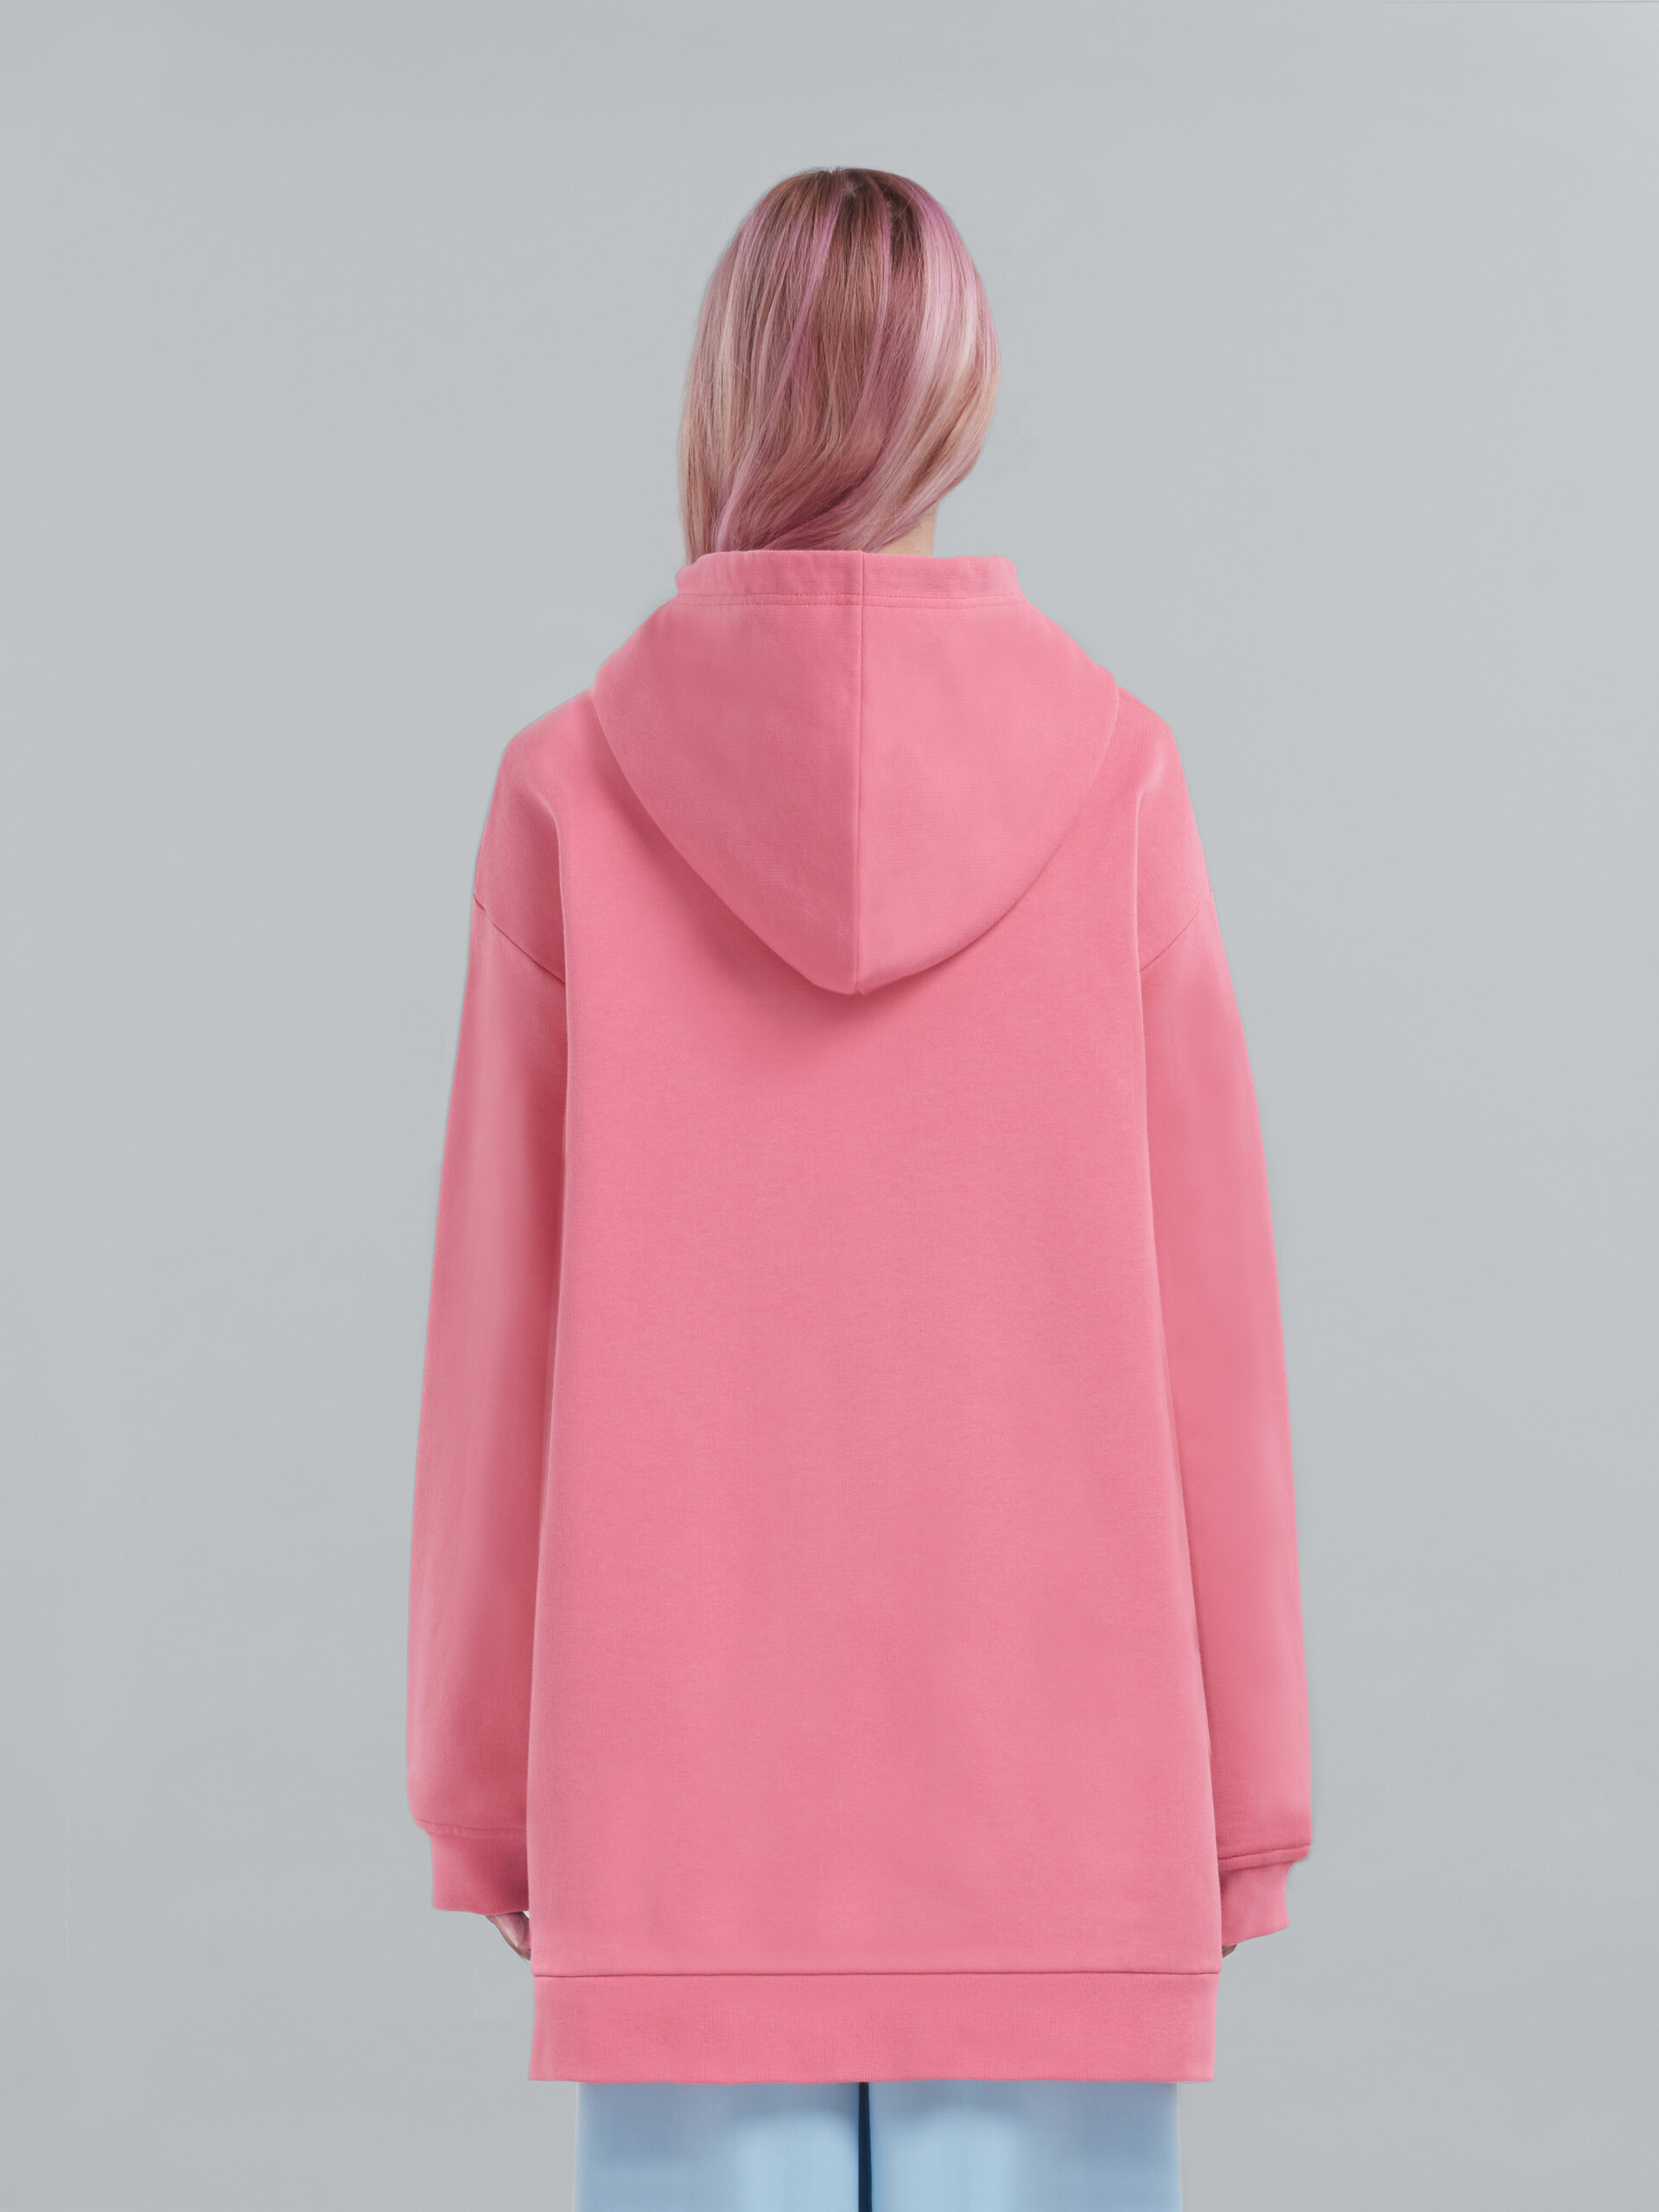 ピンク ロゴ入り オーガニックコットン製オーバーサイズスウェットシャツ - ニット - Image 3